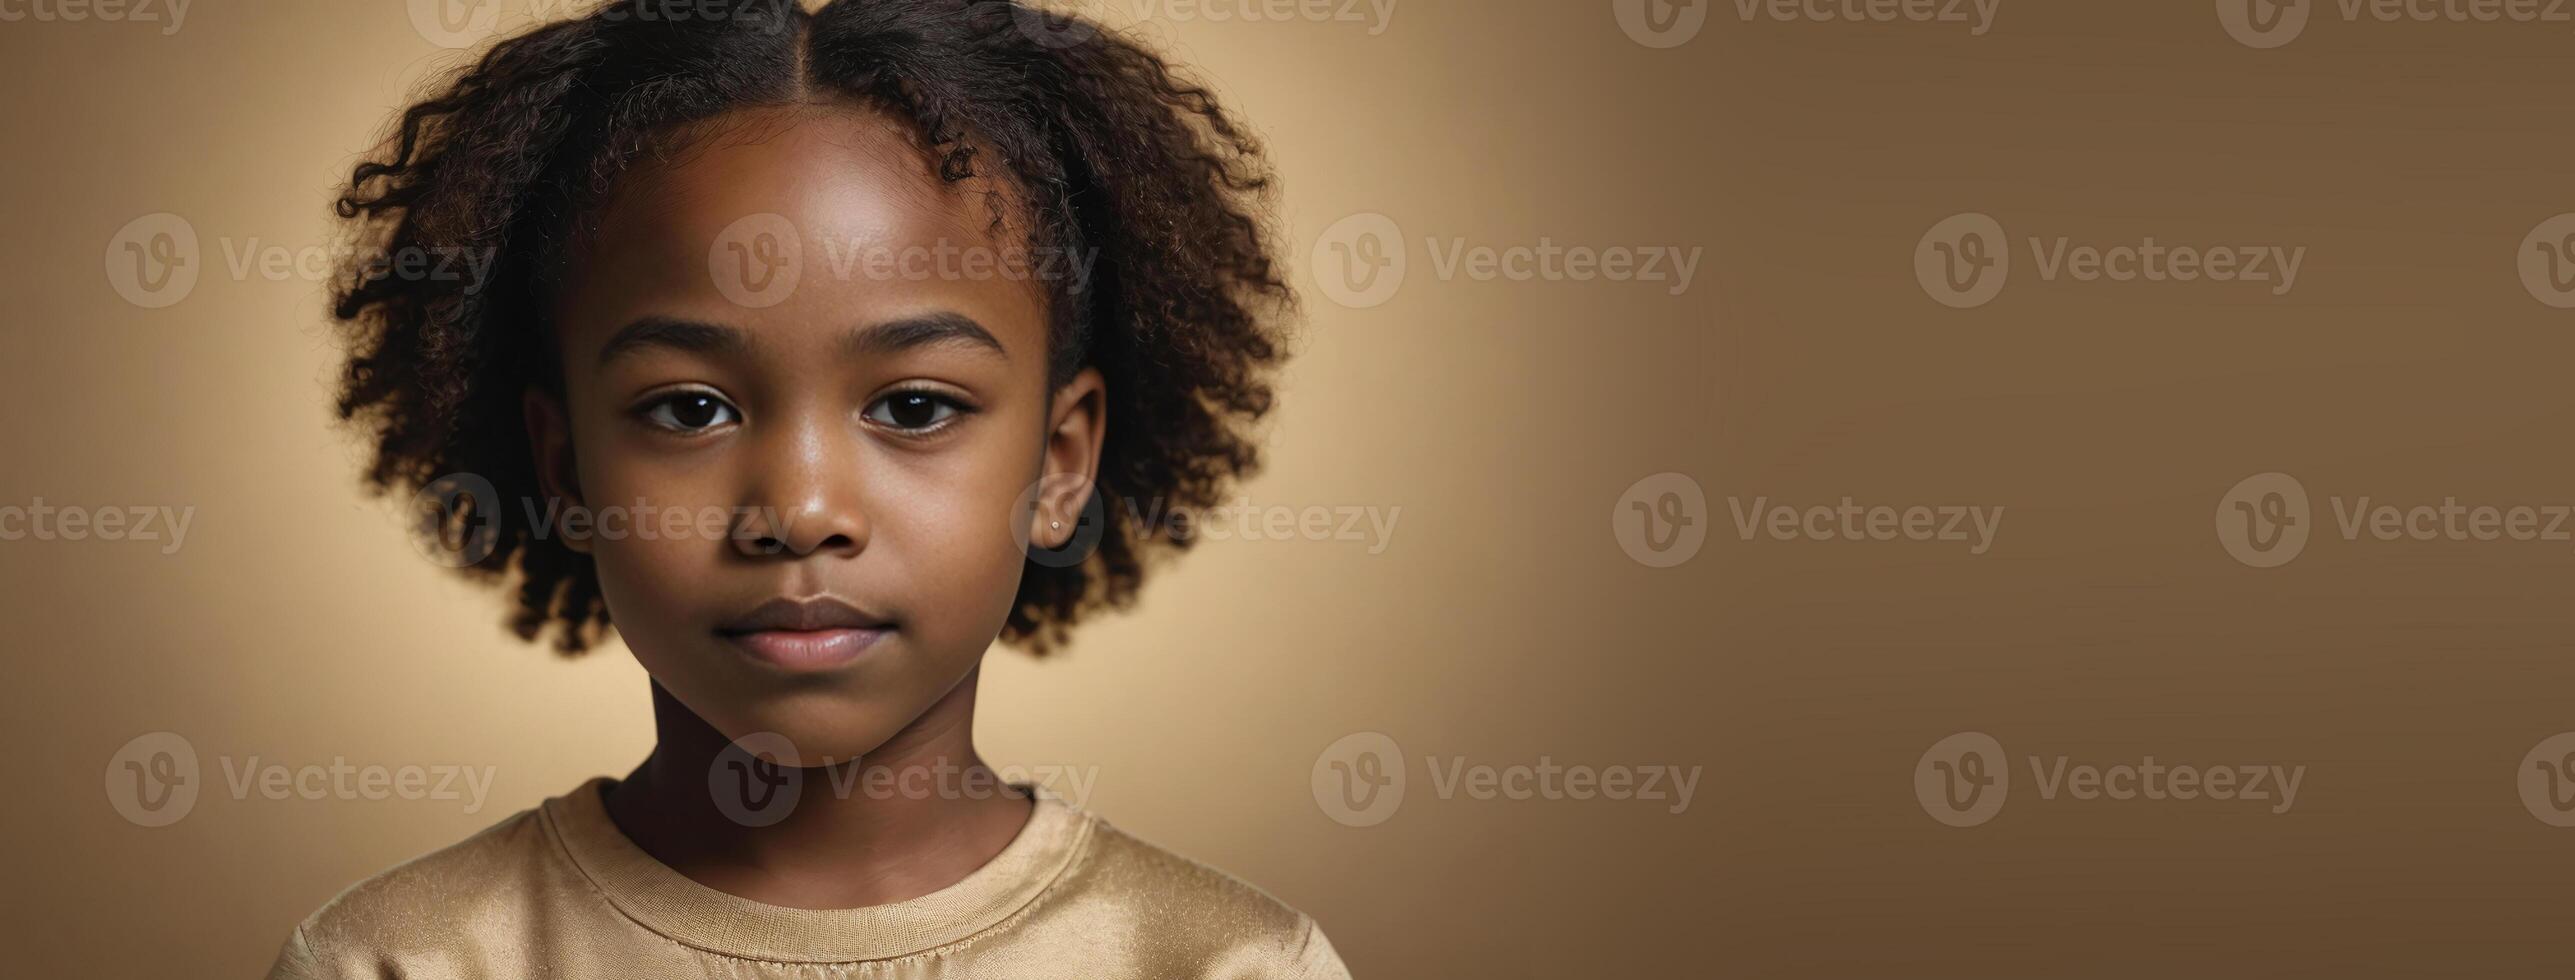 ett afrikansk amerikan ungdomlig flicka isolerat på en guld bakgrund med kopia Plats. foto